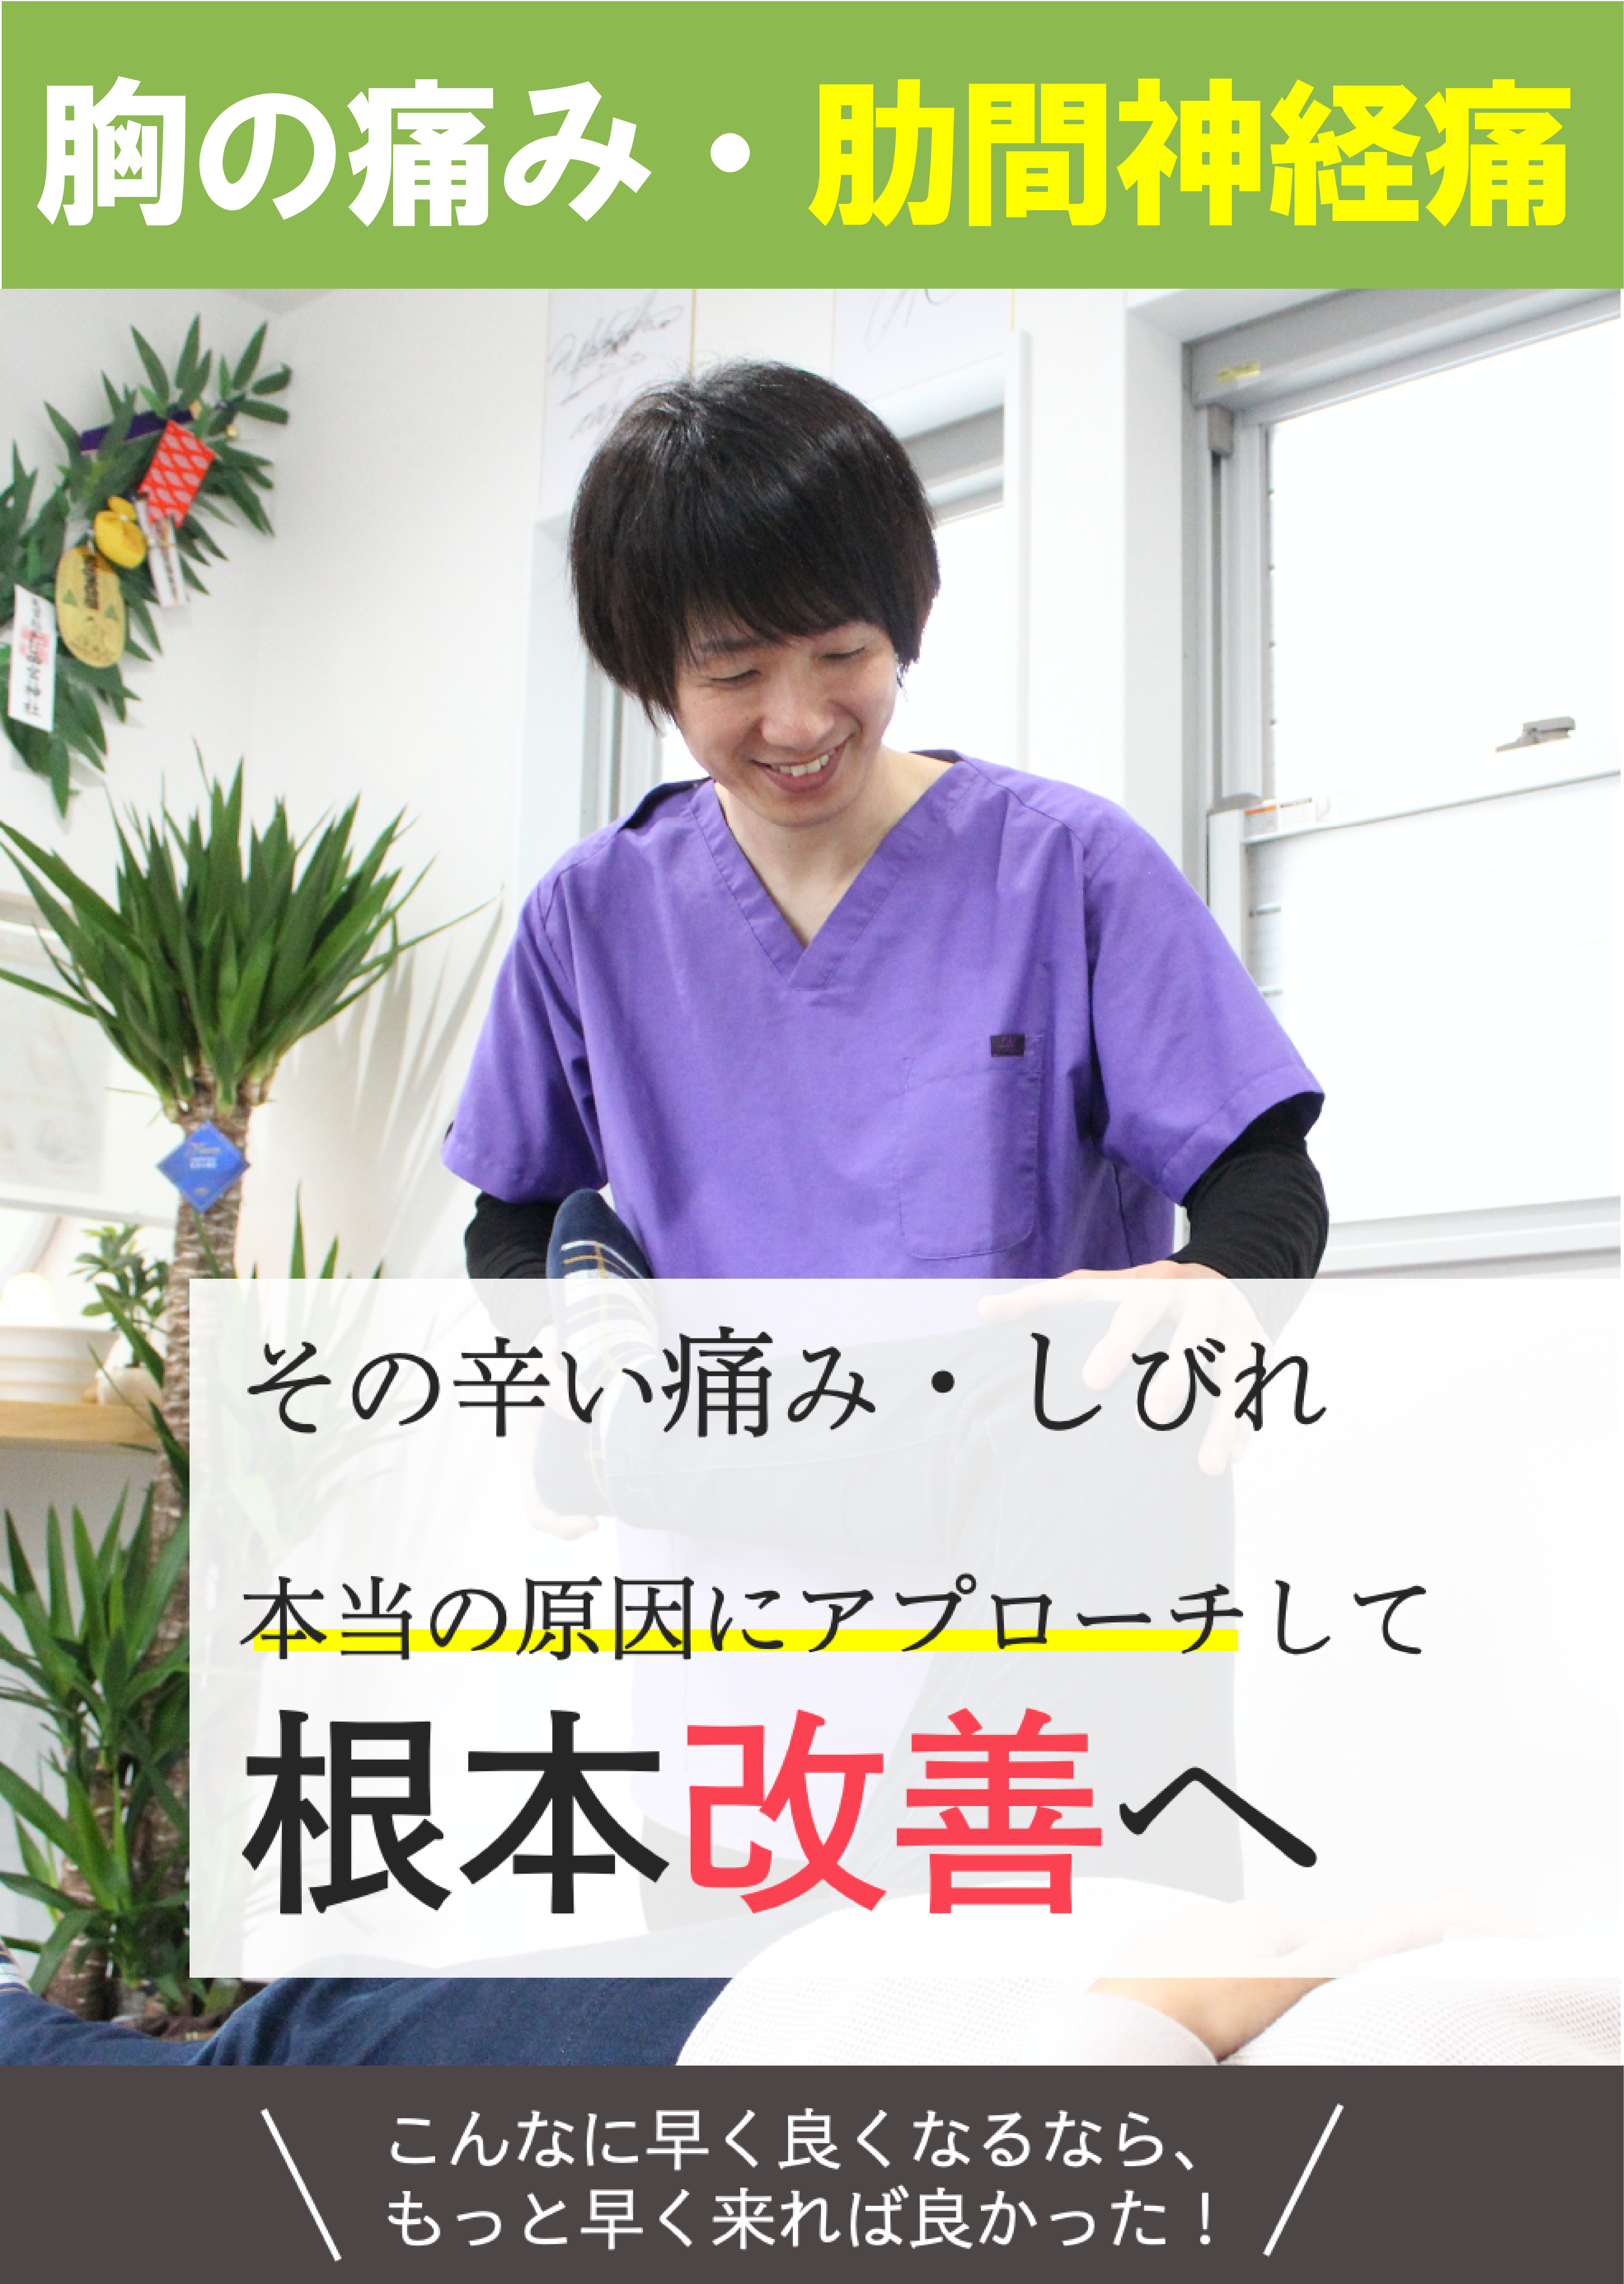 伊賀市で胸の痛み 肋間神経痛を根本改善する整体院 マオ骨格健治施療院 マオ骨格健治施療院